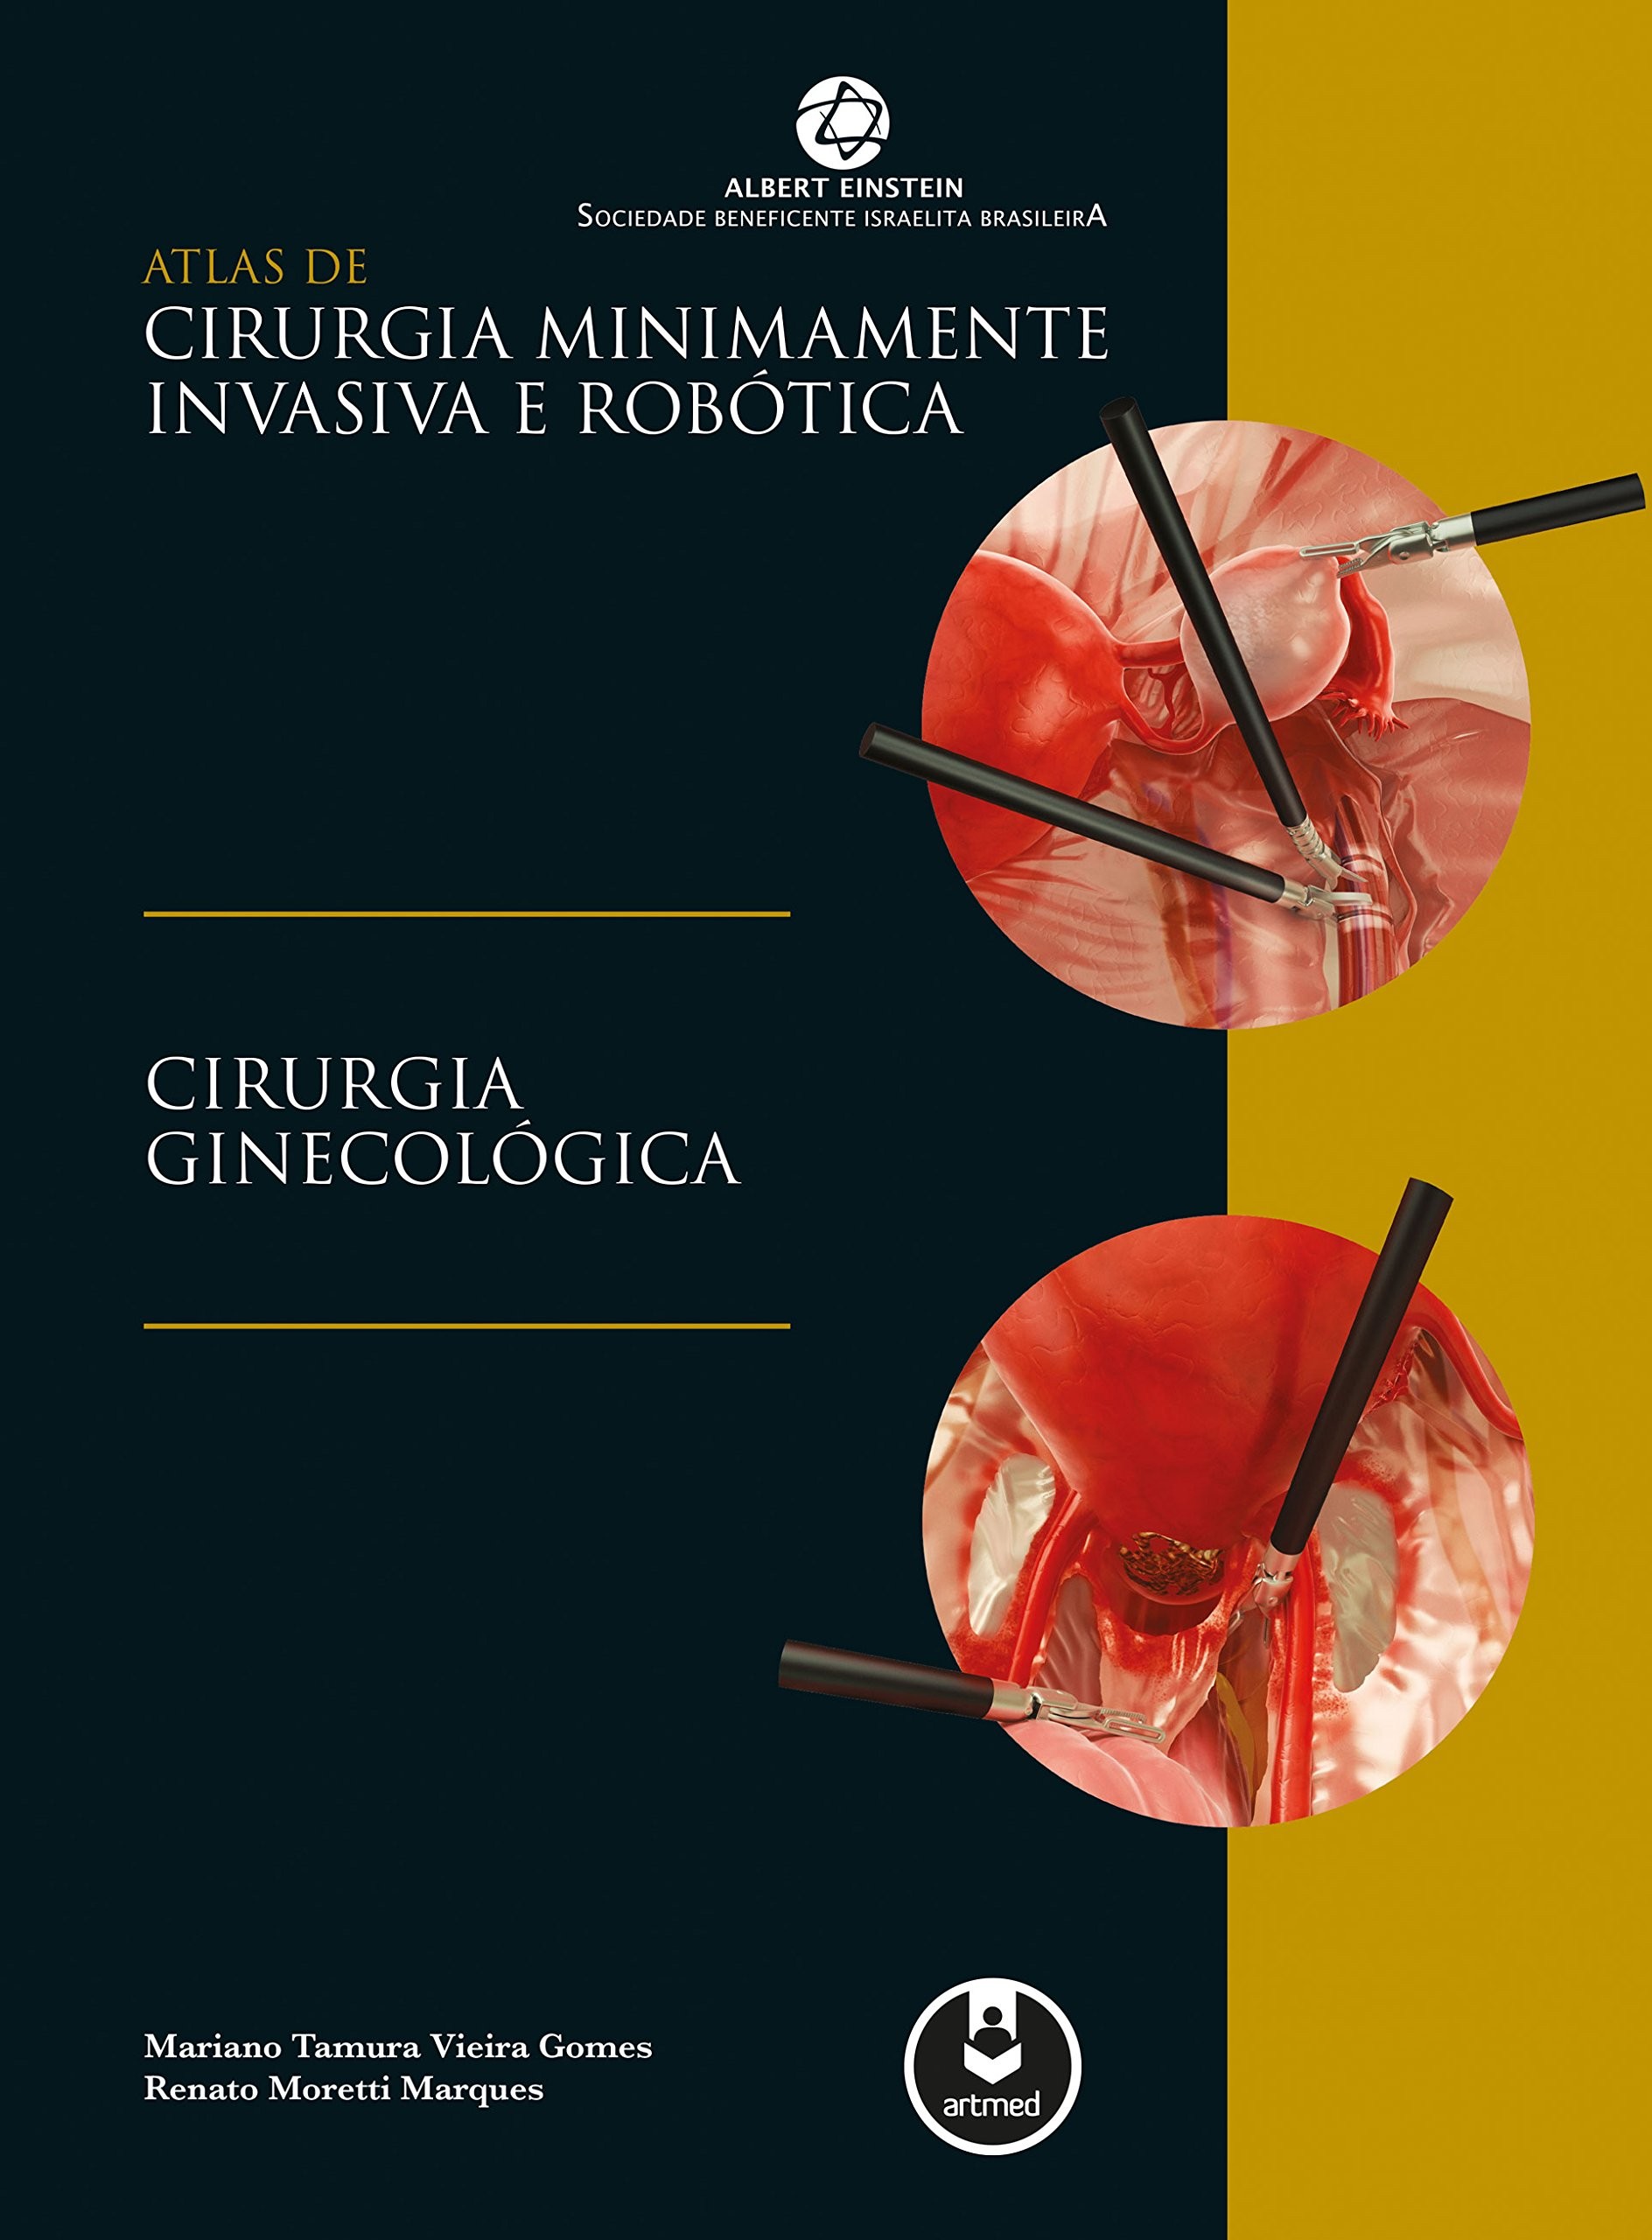 Atlas de Cirurgia Minimamente Invasiva e Robótica: Cirurgia Ginecológica